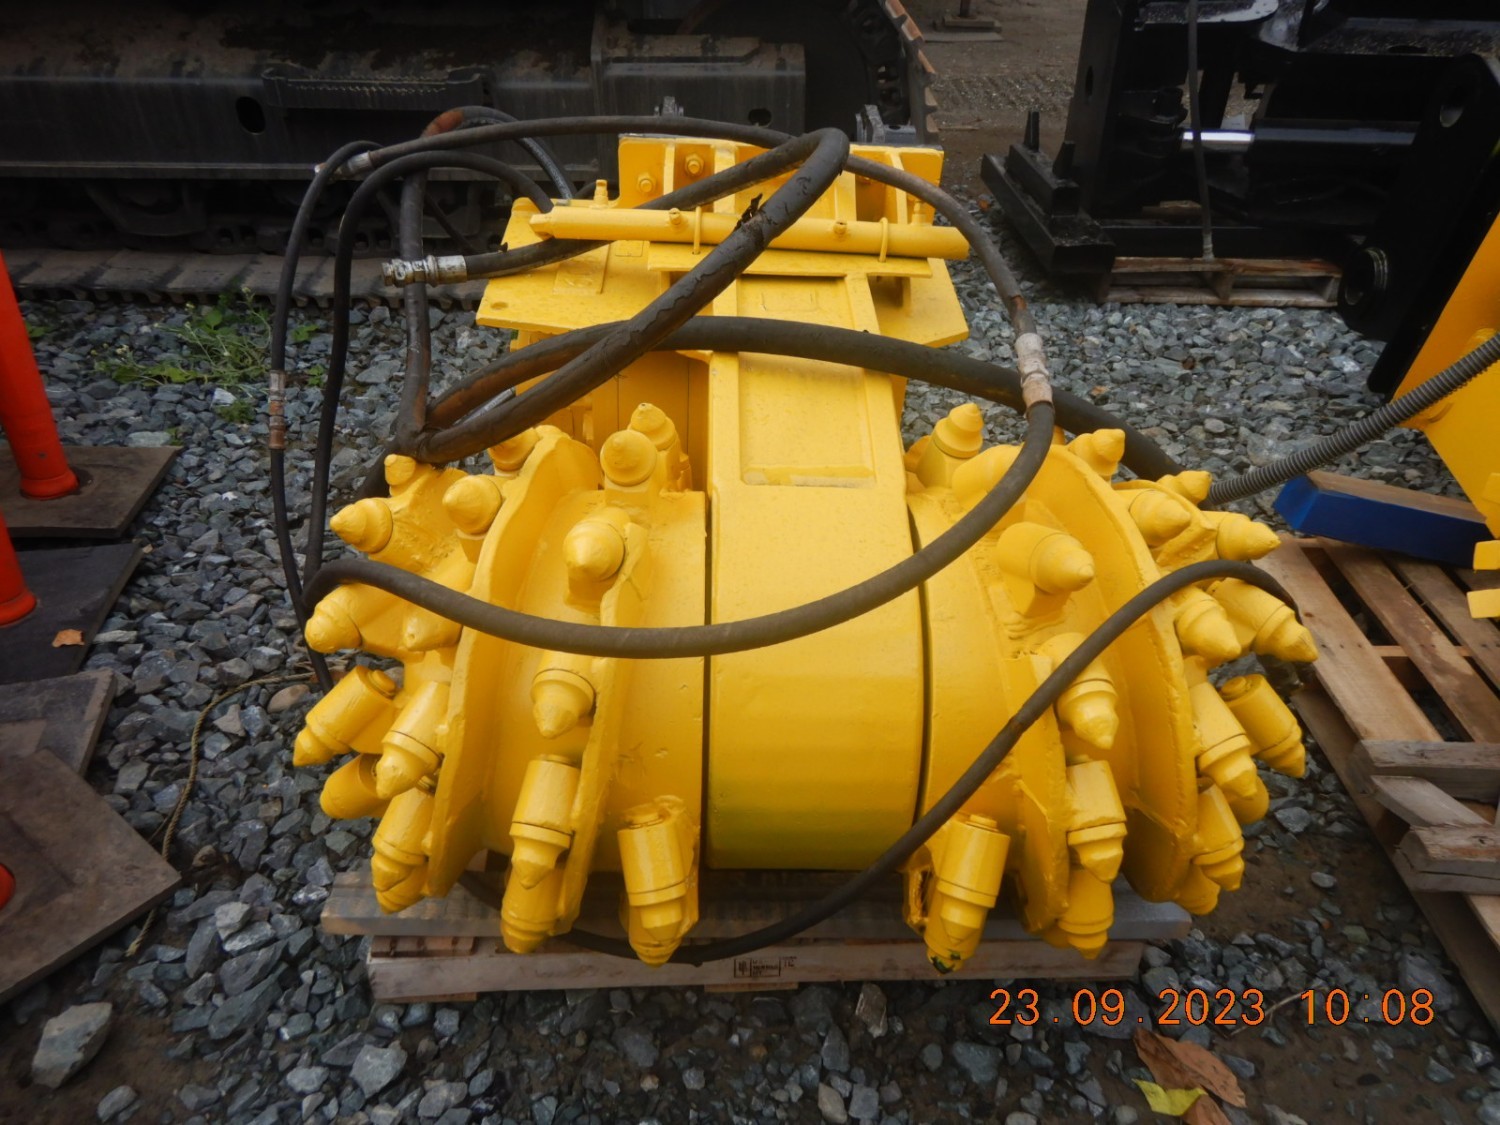 terex-ws-120md-160-hyd-hp-dual-drum-grinder-30-50-ton-excavator-big-3